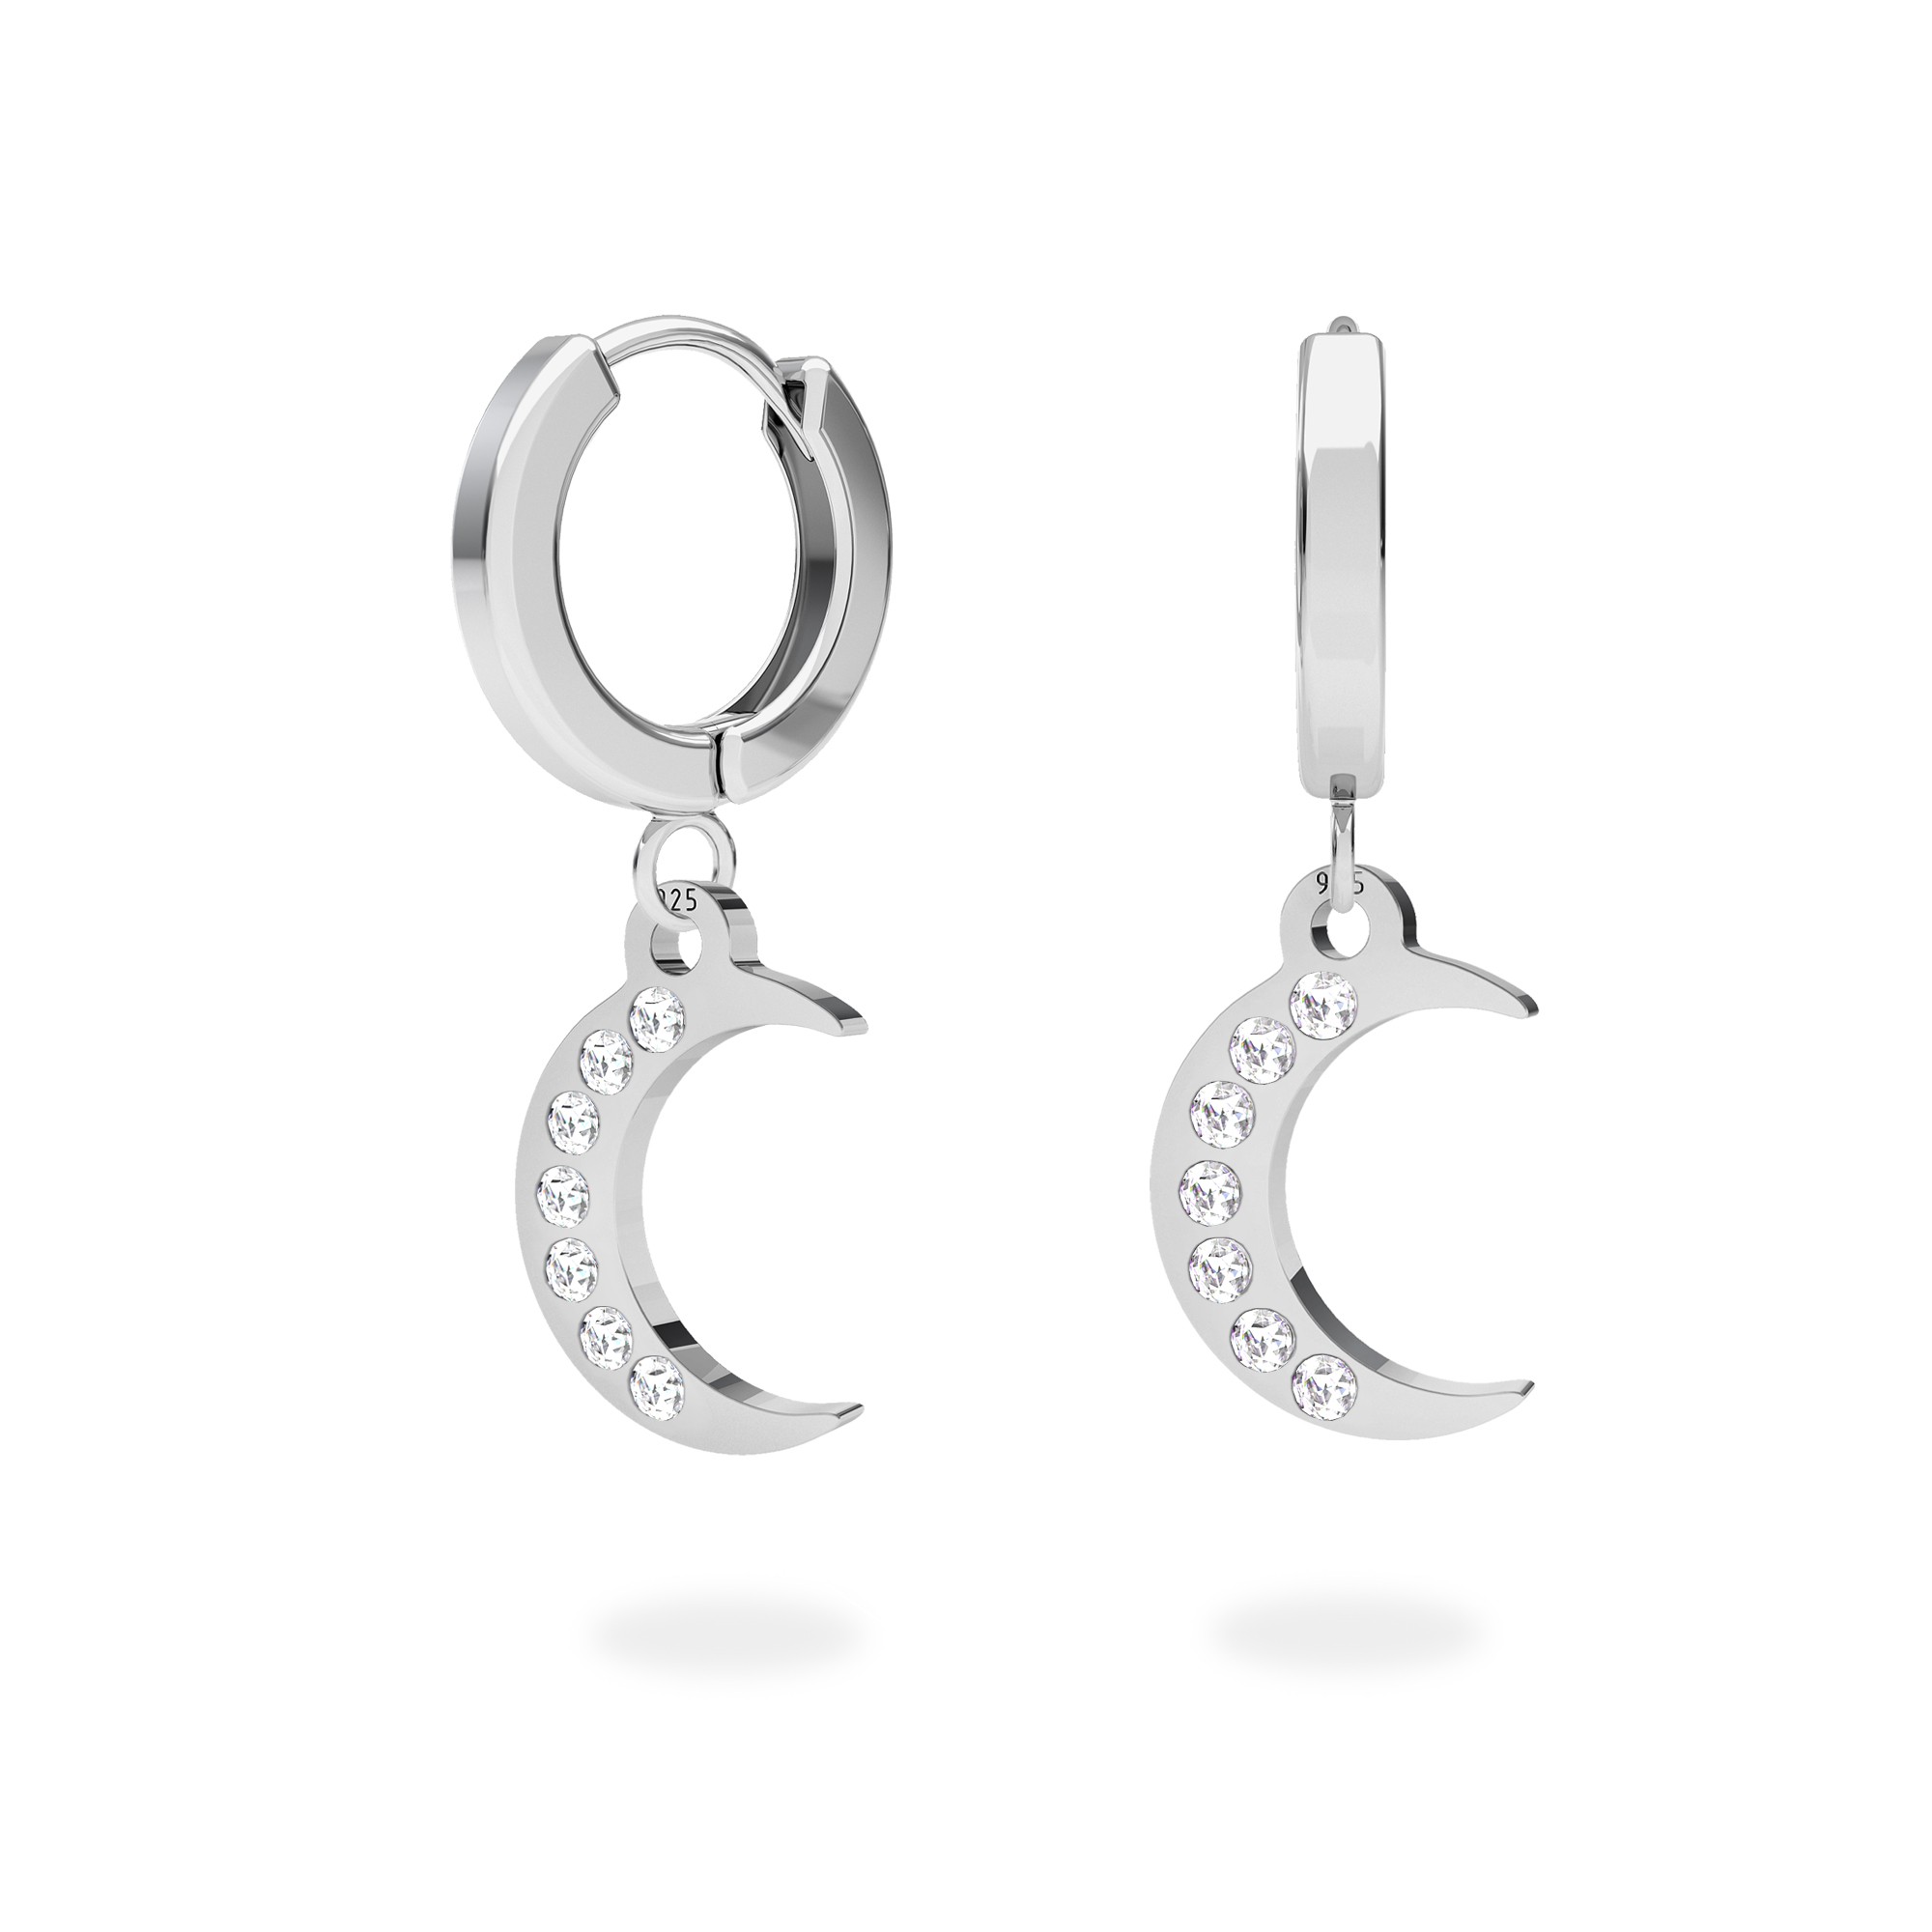 Moon earrings sterling silver 925